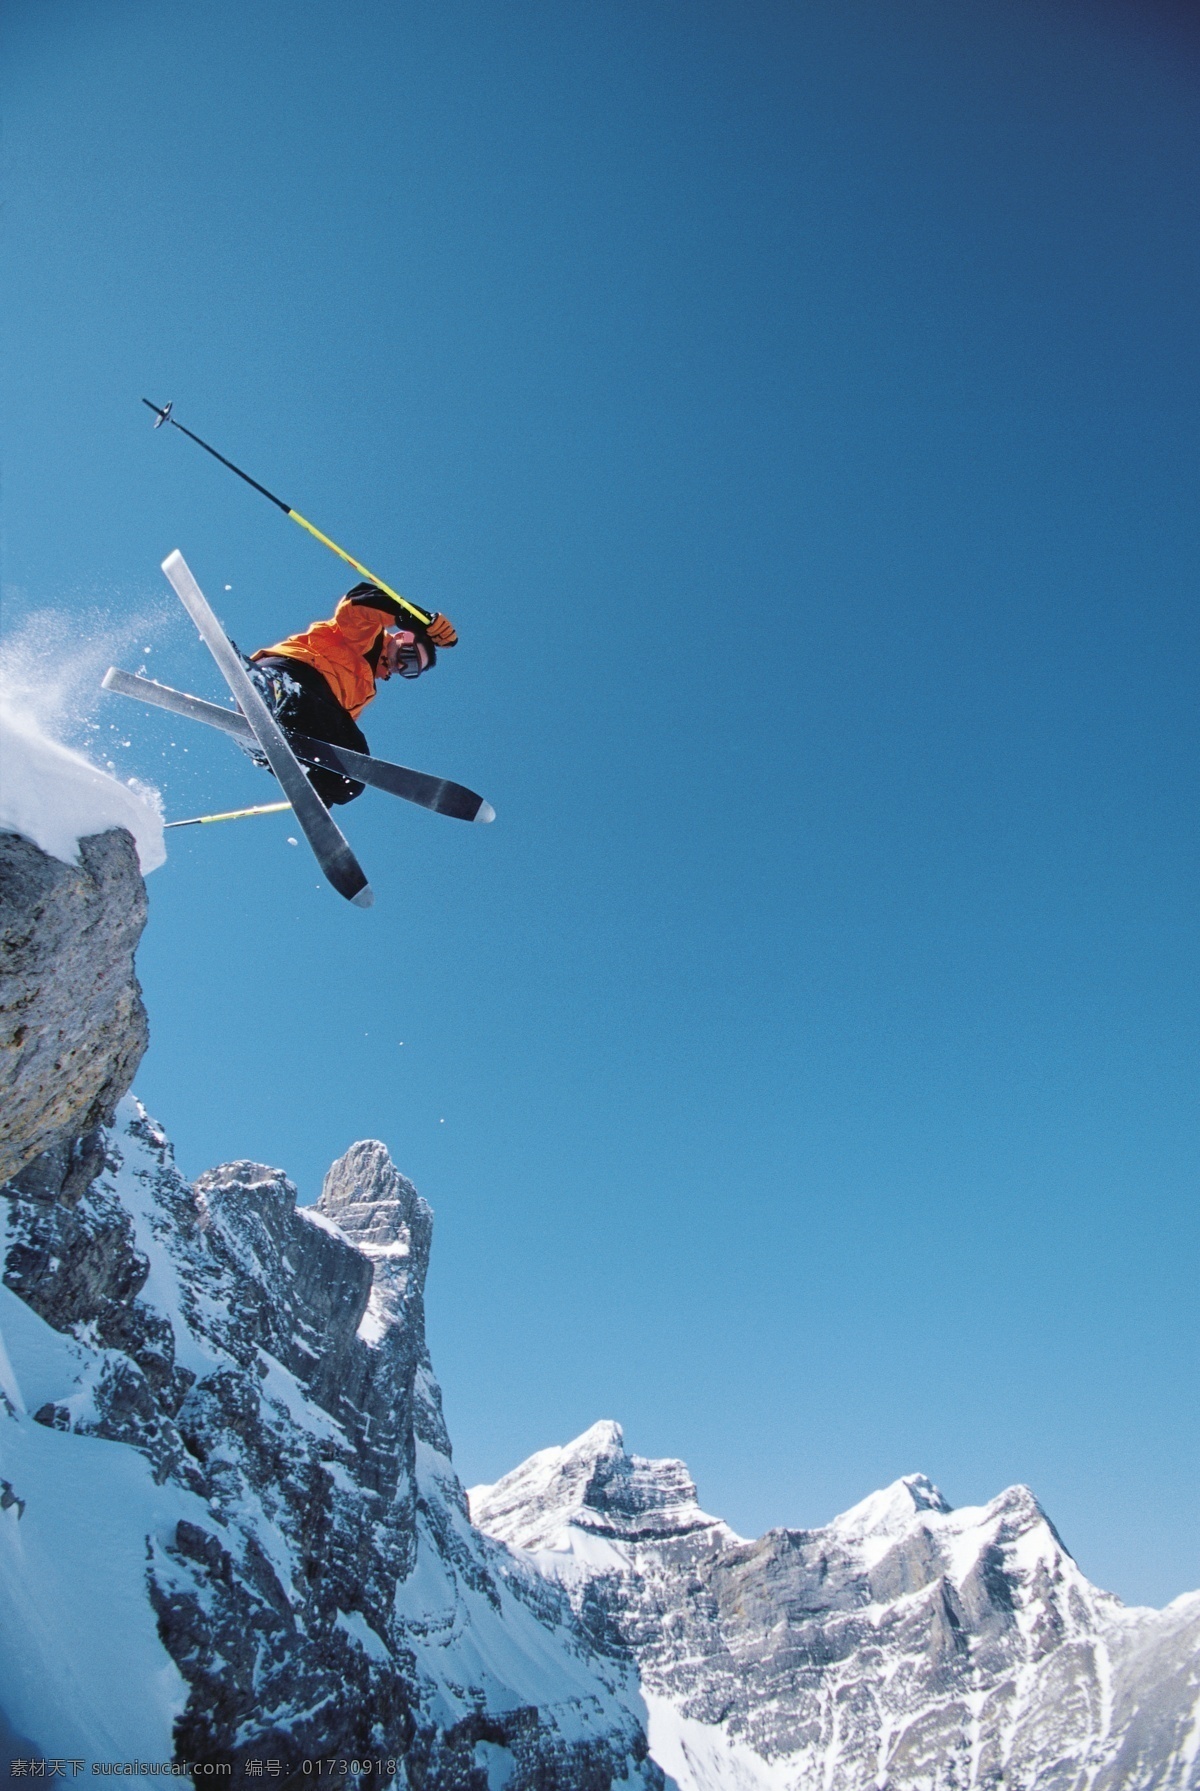 高山 划 雪 运动 图 高山划雪运动 极限运动 运动图片 双板滑雪 雪山 风景 腾空 跳跃 生活百科 摄影图片 高清图片 体育运动